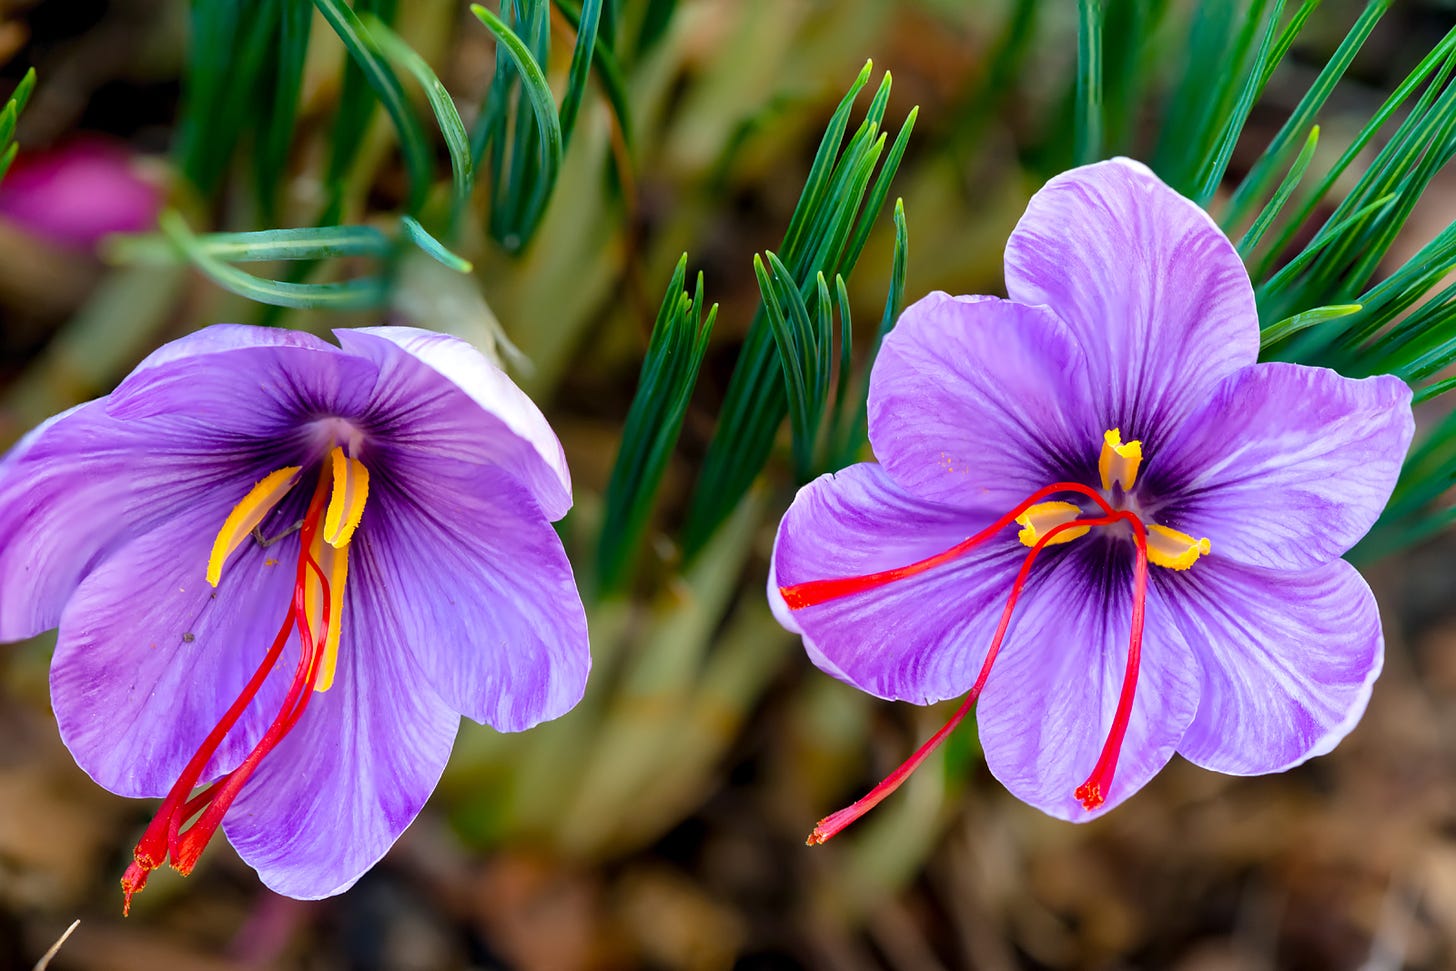 saffron | Description, History, & Uses | Britannica